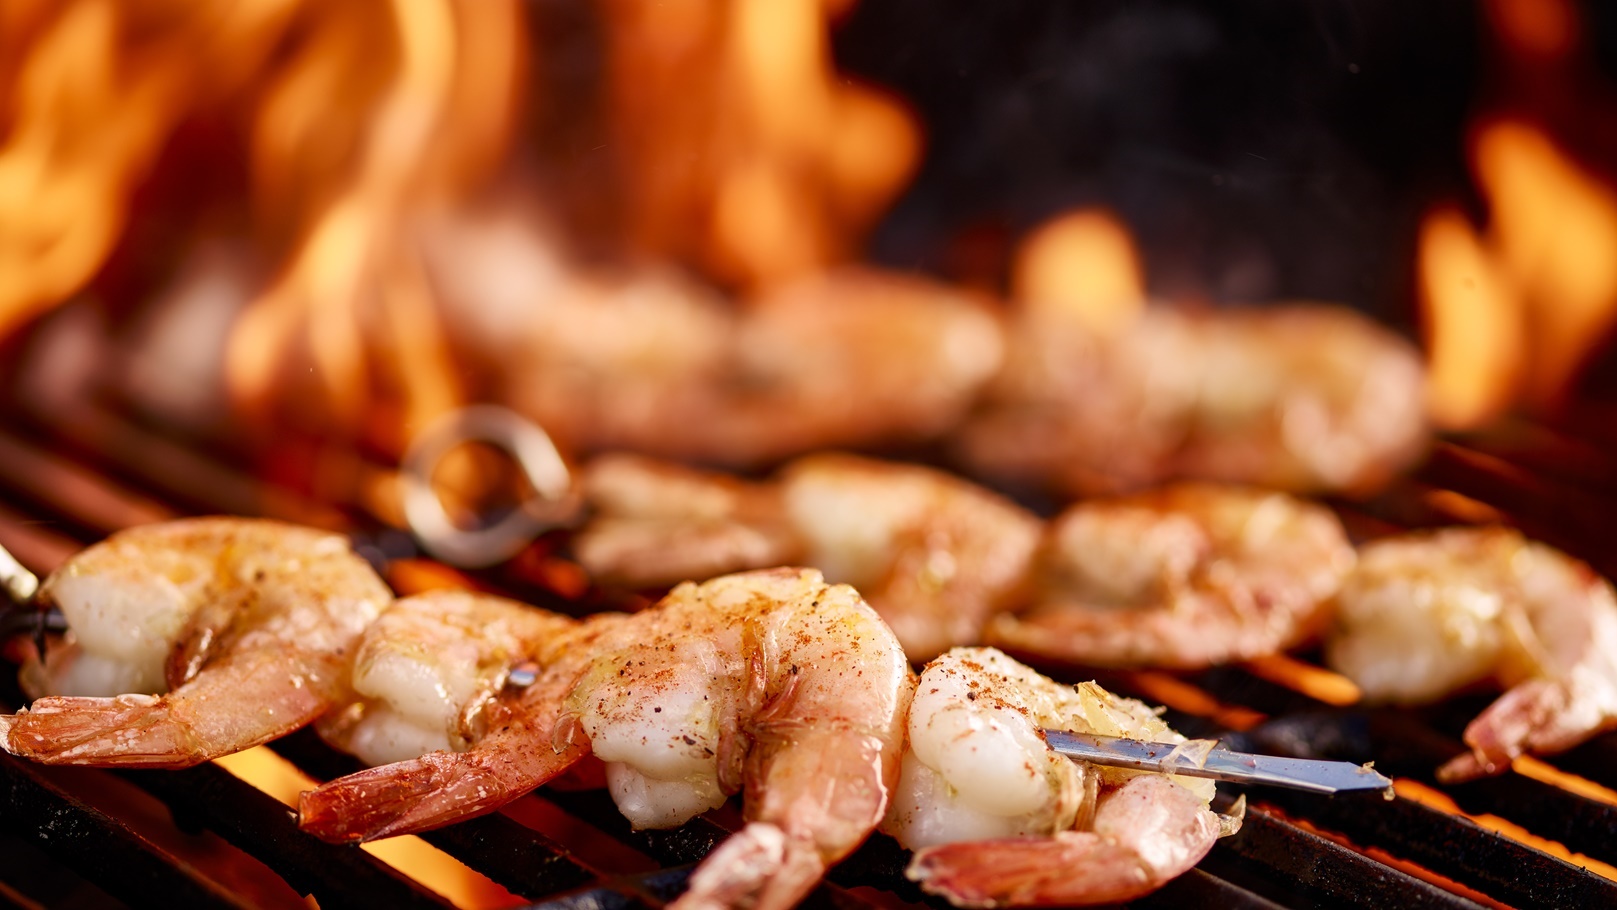 grilling-shrimp-on-skewer-on-grill-2022-03-26-12-19-49-utc